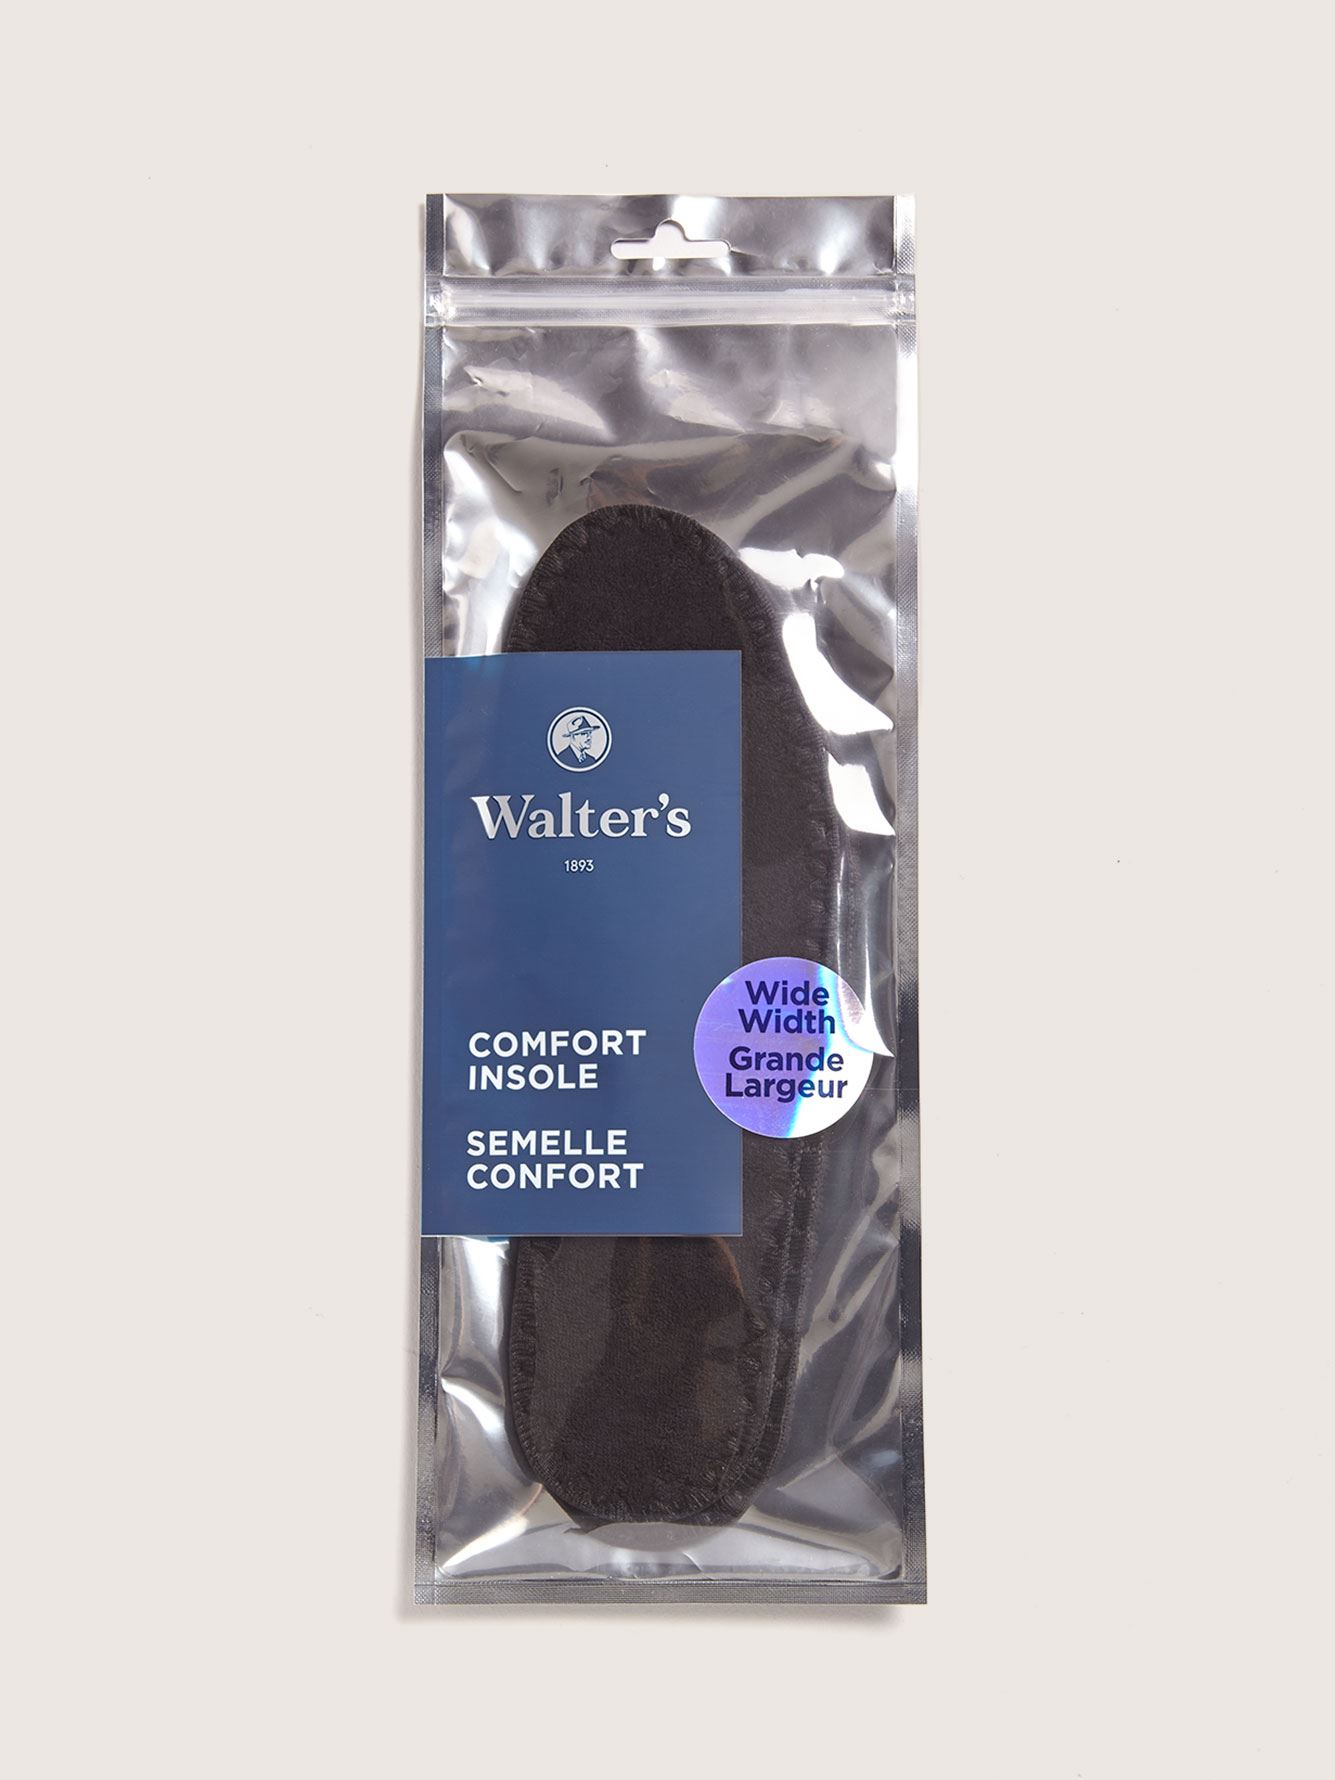 Semelles confort pour pieds larges - Walter's